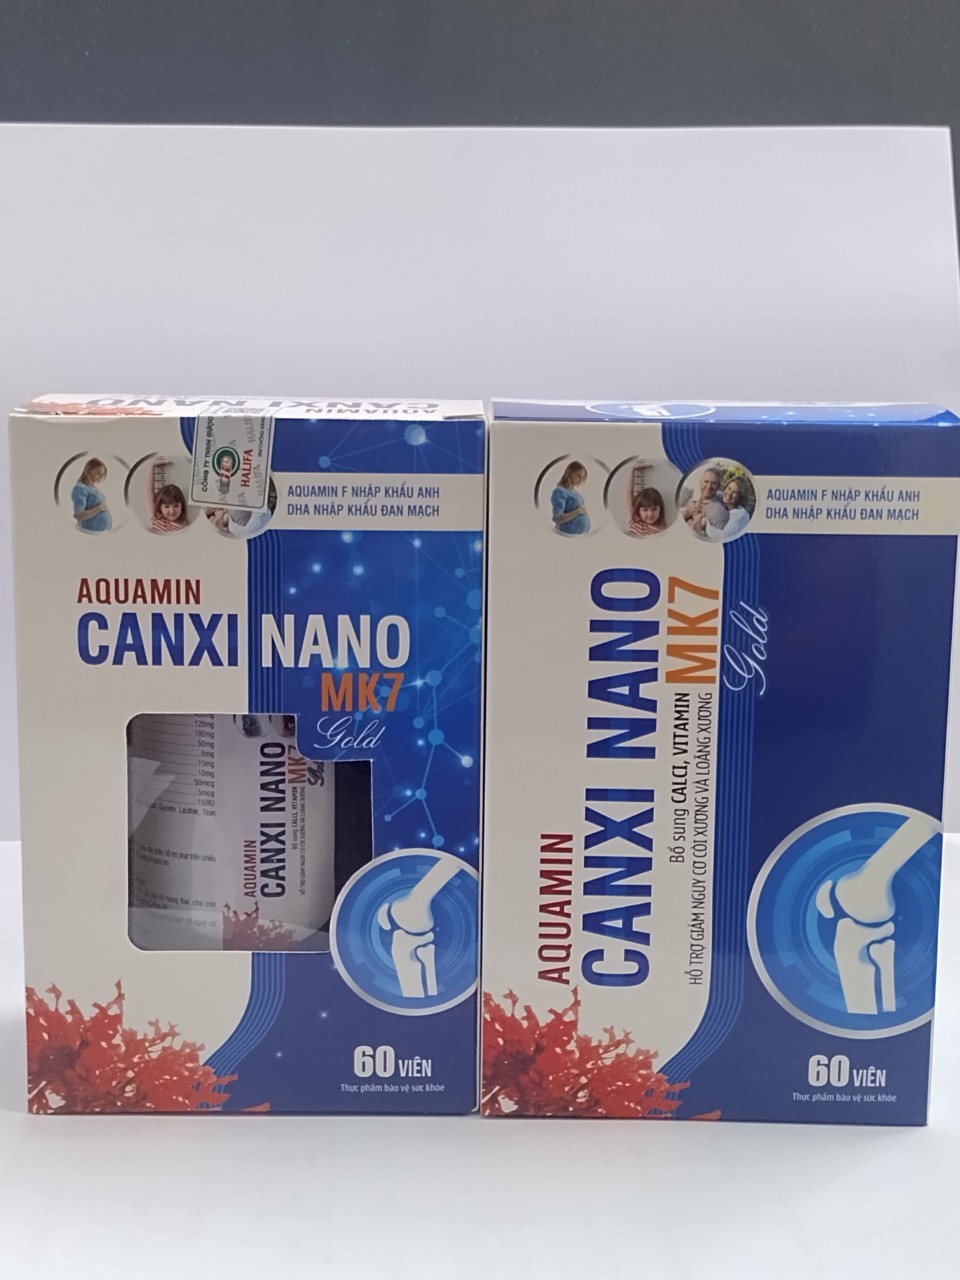 viên uống CAN XI NANO MK7 GOLD**Aquamin Canxi Nano MK7 Gold Bổ sung canxi vitamin hỗ trợ giảm nguy cơ còi xương và loãng xương Bổ sung canxi vitamin d3 cho cơ thể giúp xương răng chắc khỏe **